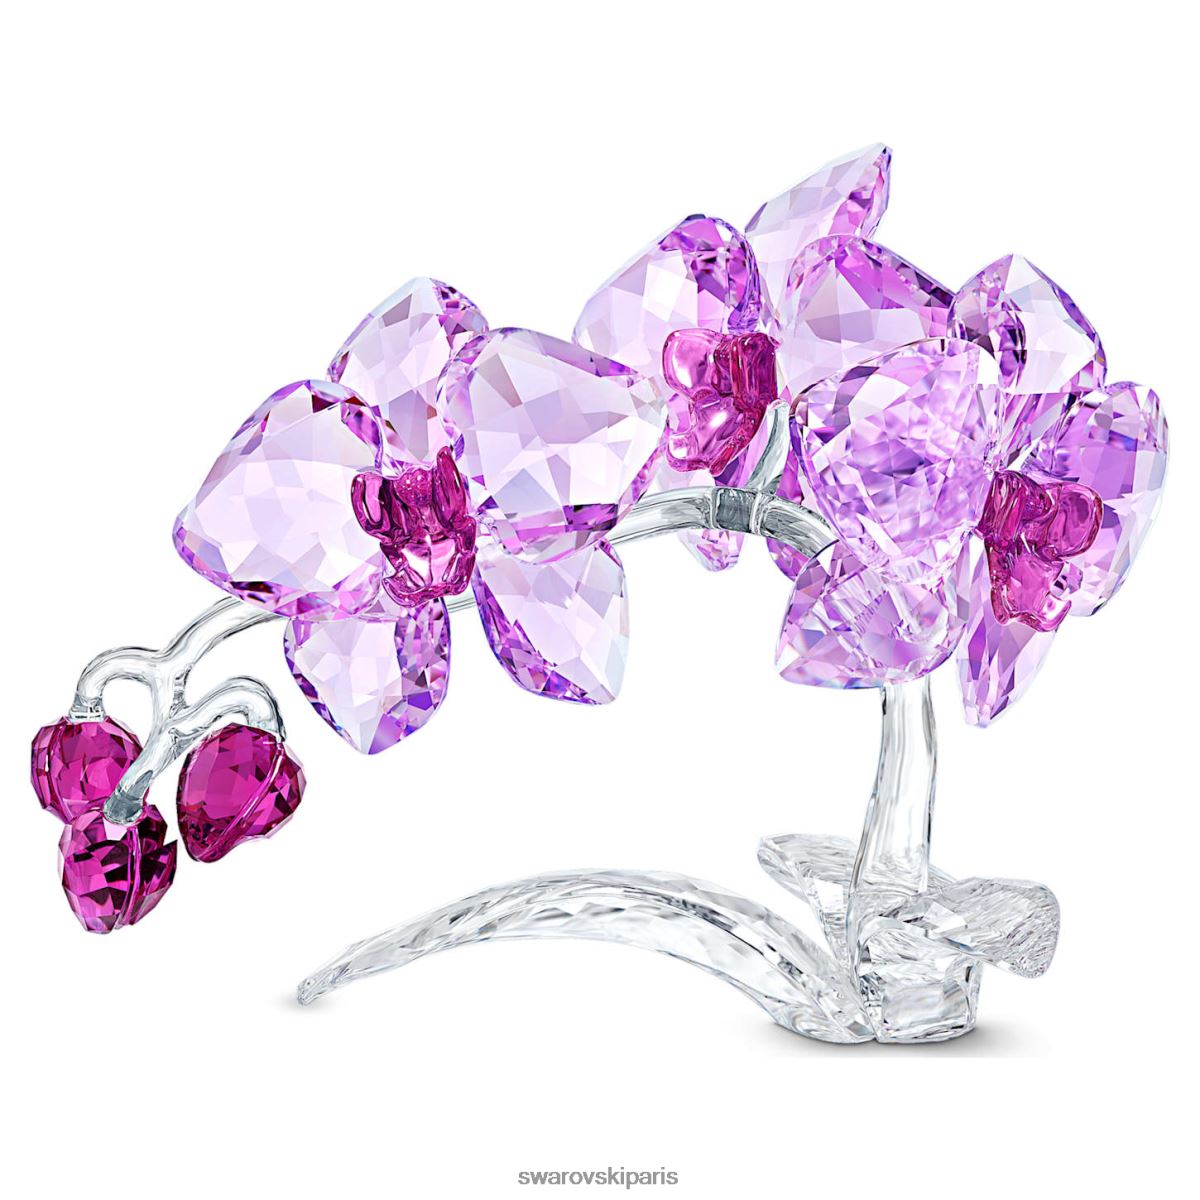 décorations Swarovski orchidée fleurs de cristal collection RZD0XJ1630